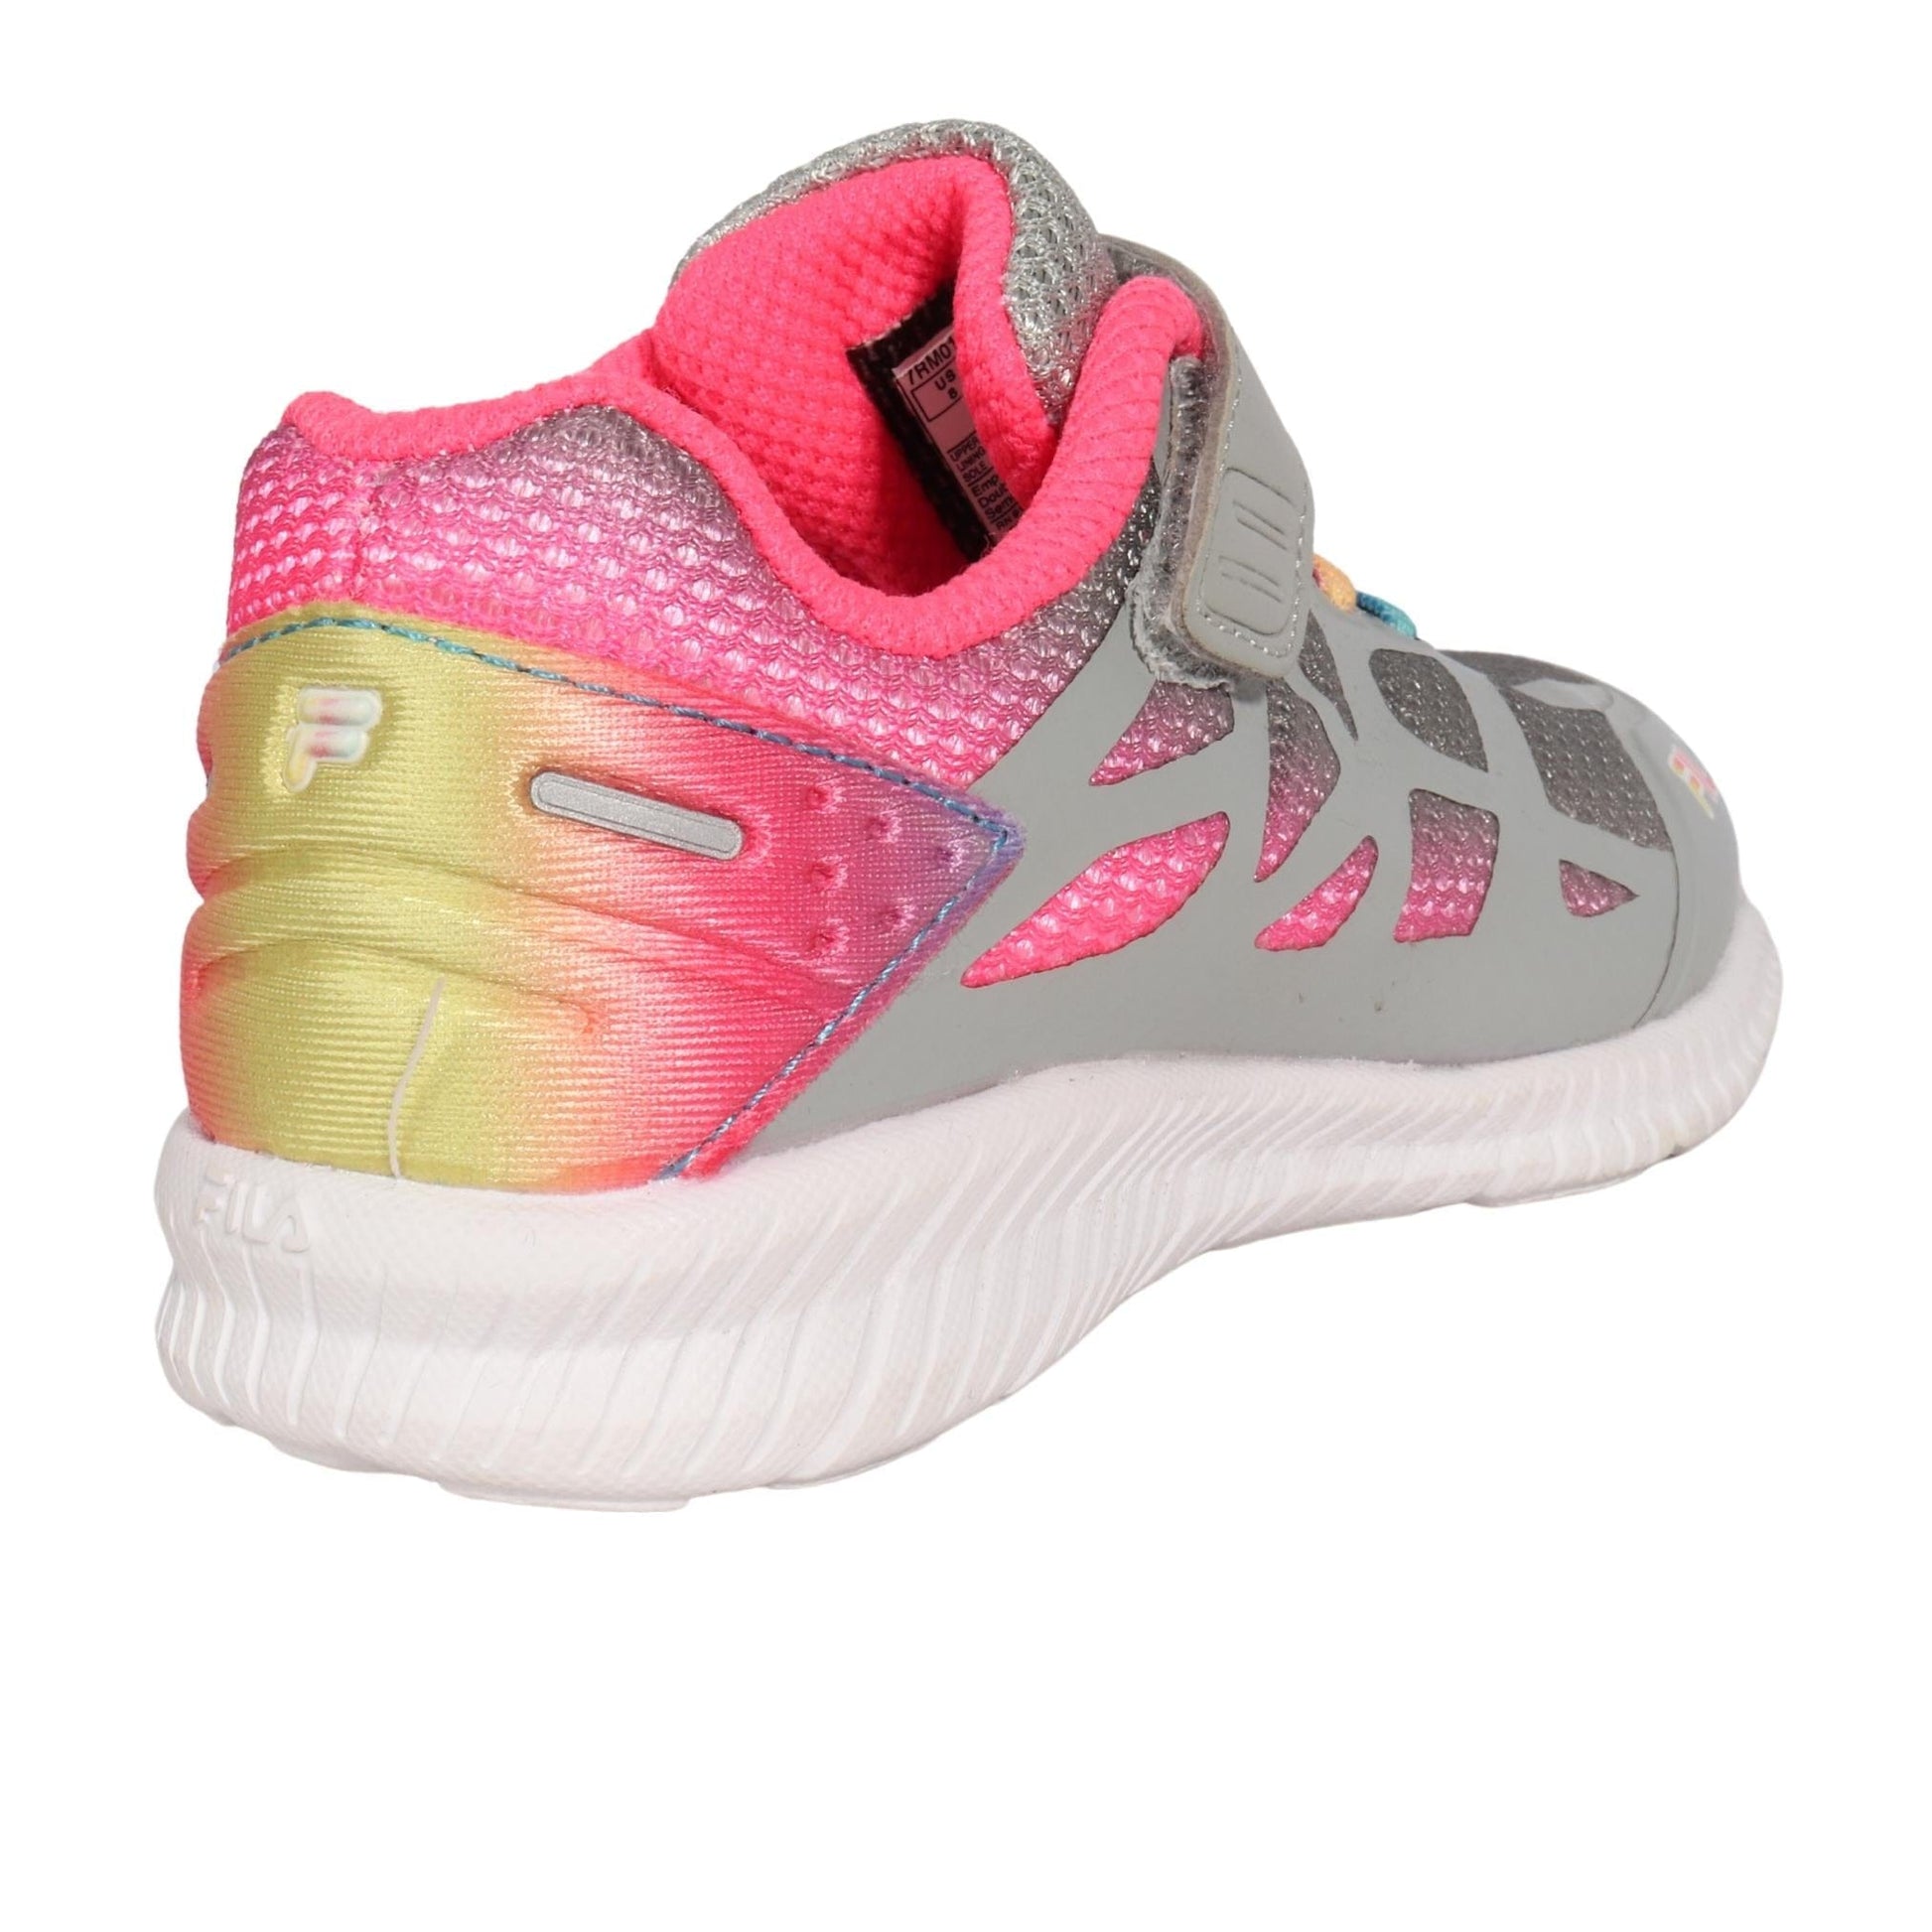 FILA Athletic Shoes 25 / Multi-Color FILA - Super Stride Sneakers